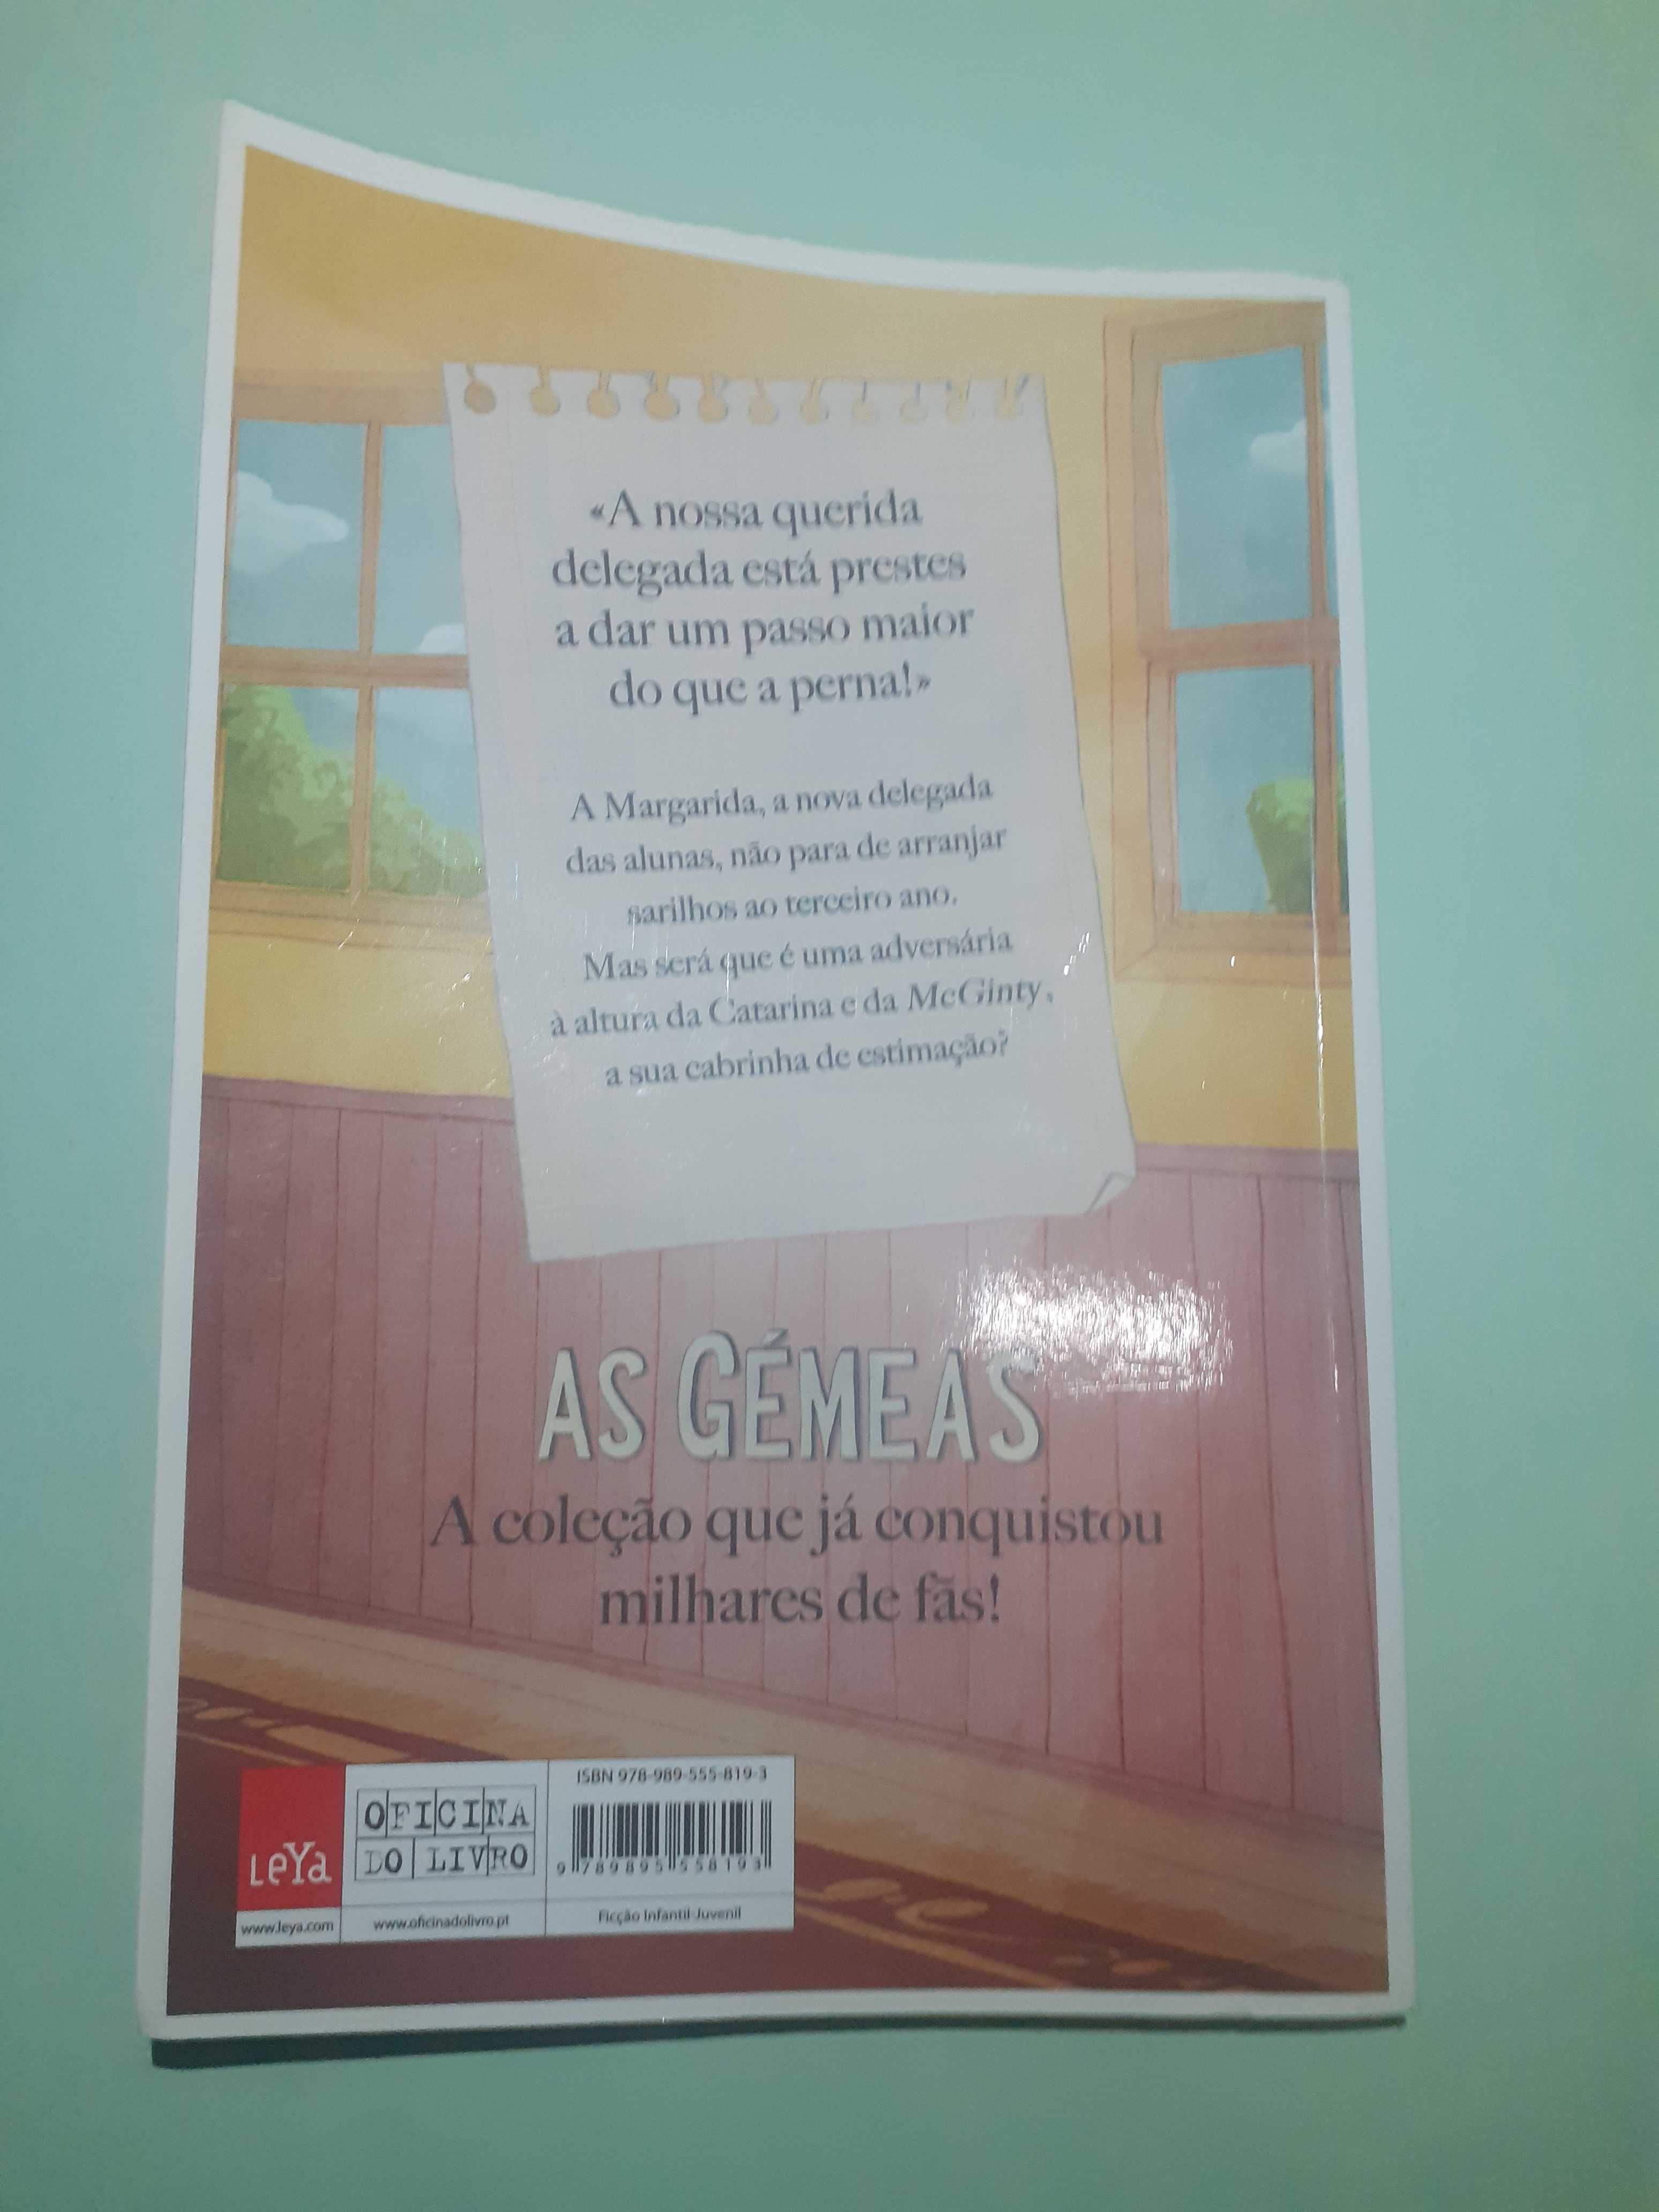 Livro As gémeas "Catarina no colégio de Santa Clara"